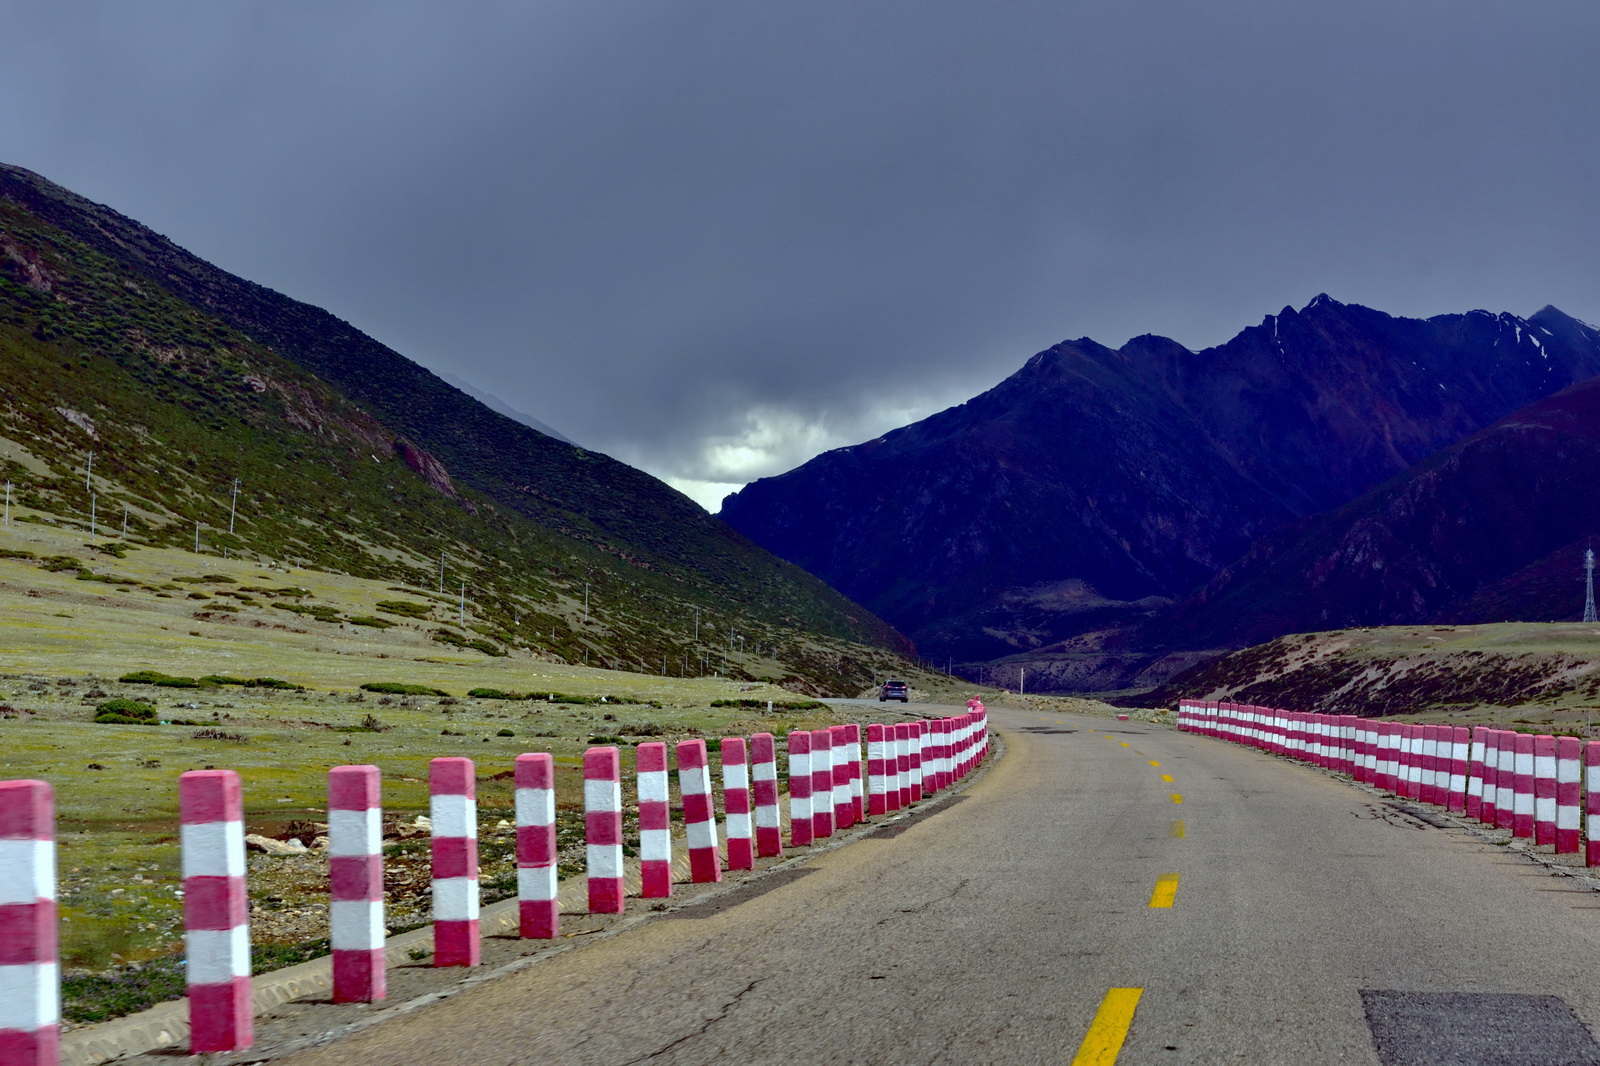 318国道川藏线最新路况-2021进藏实时路况报道-西行川藏